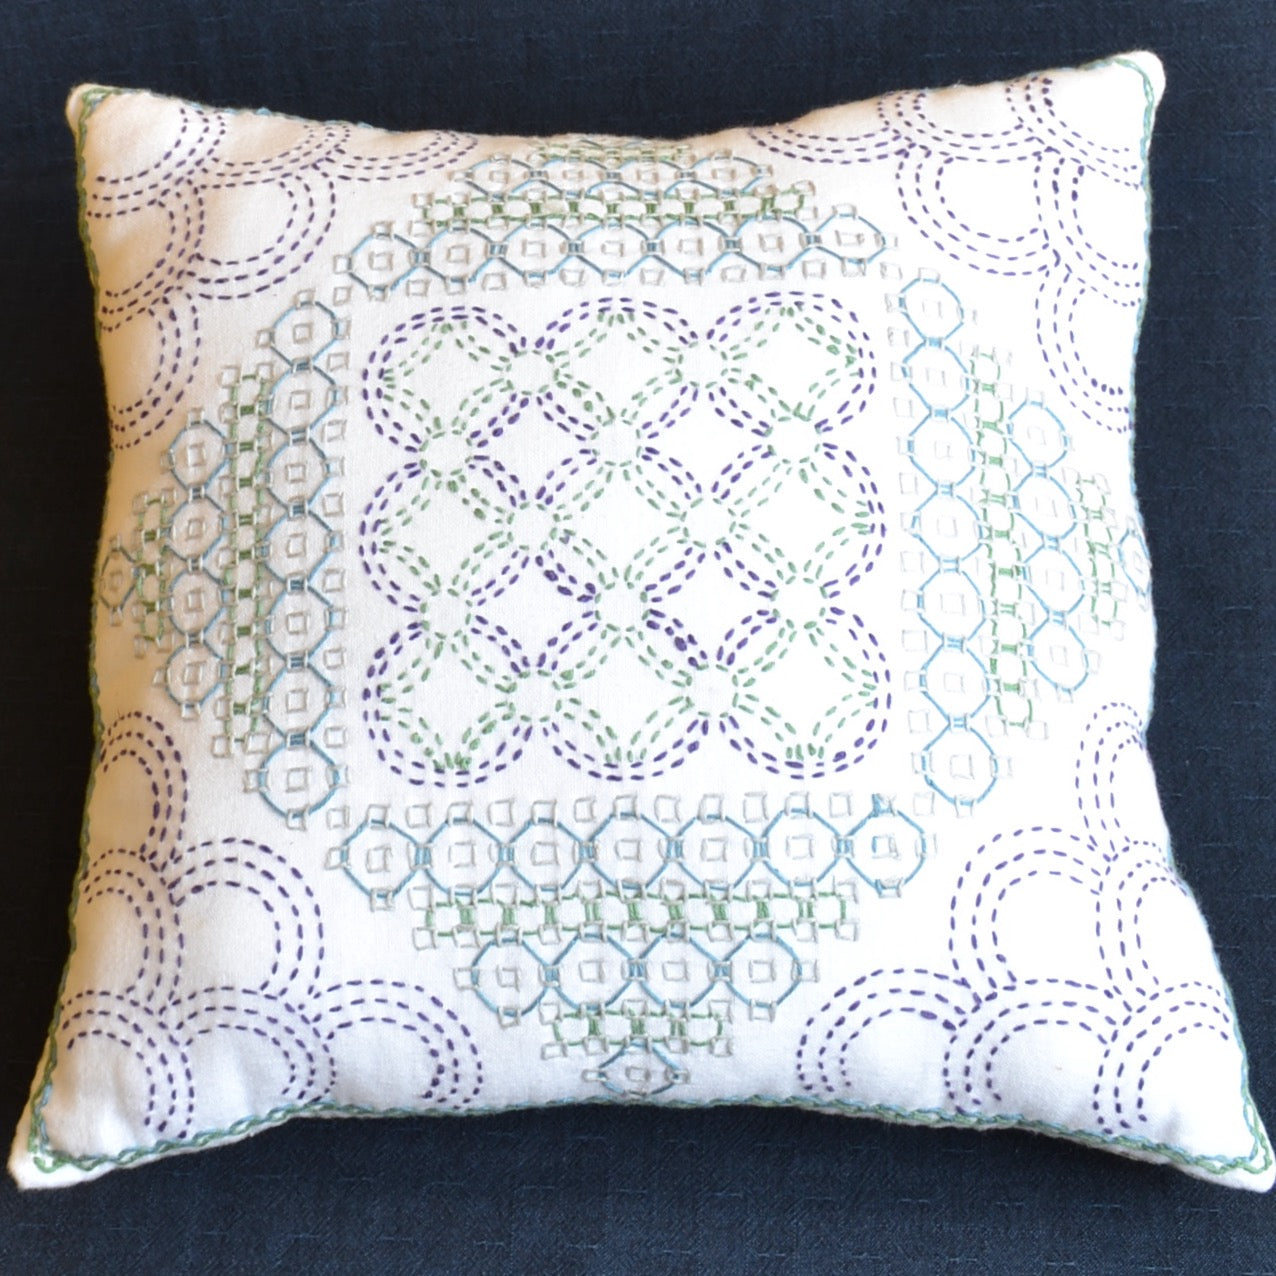 Sashiko  stitched cotton fabric pillow